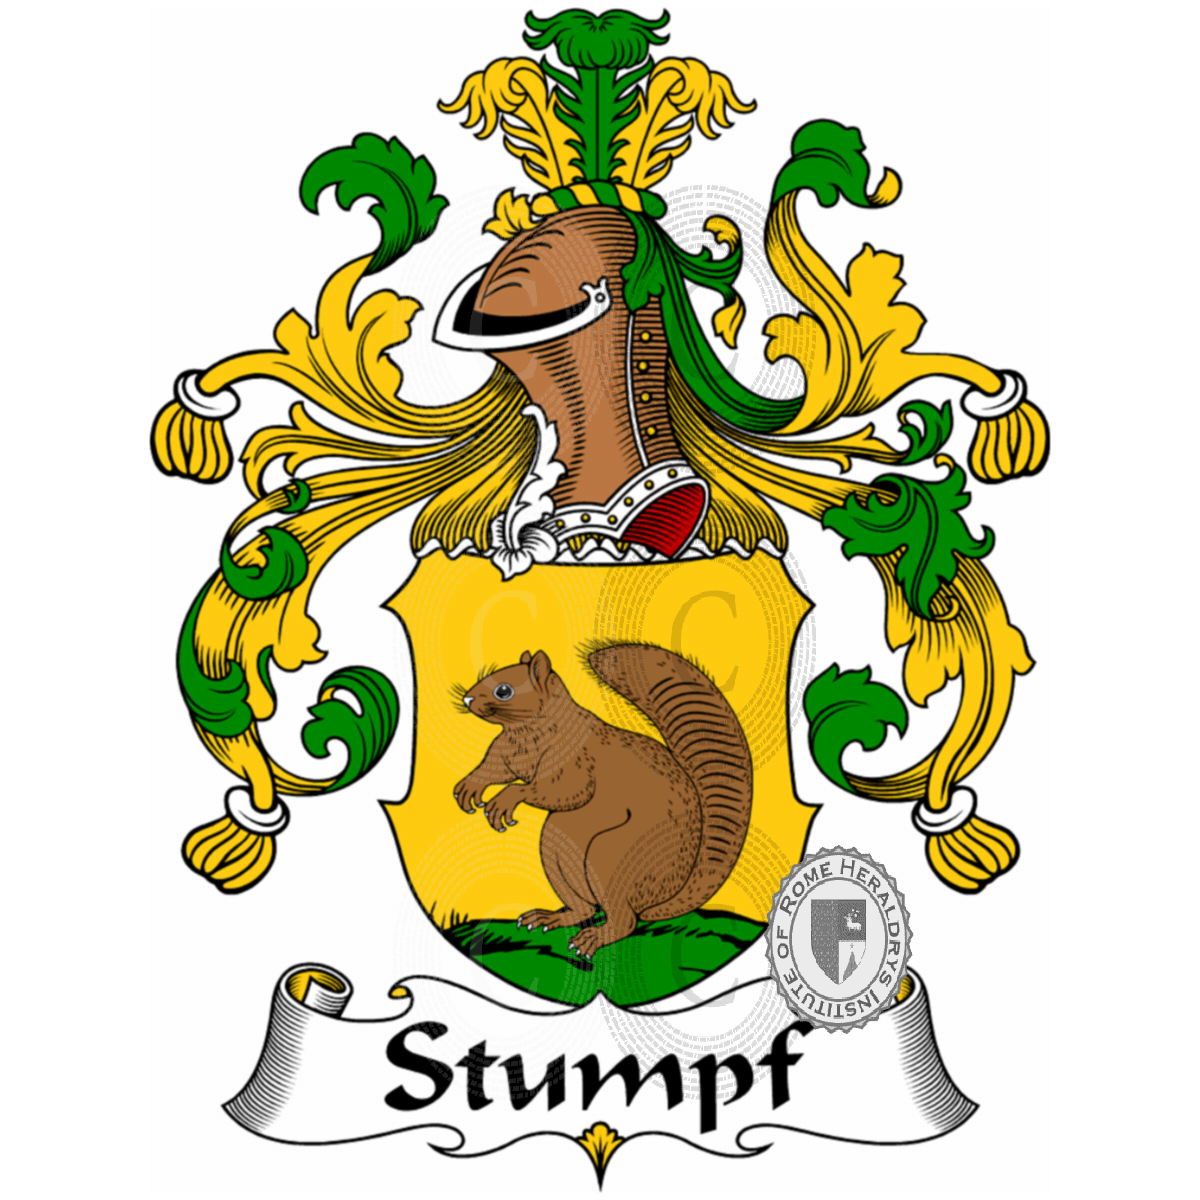 Stemma della famigliaStumpf, Stumpf Brentano,Stumpf von Püchel und de Stumpfsberg